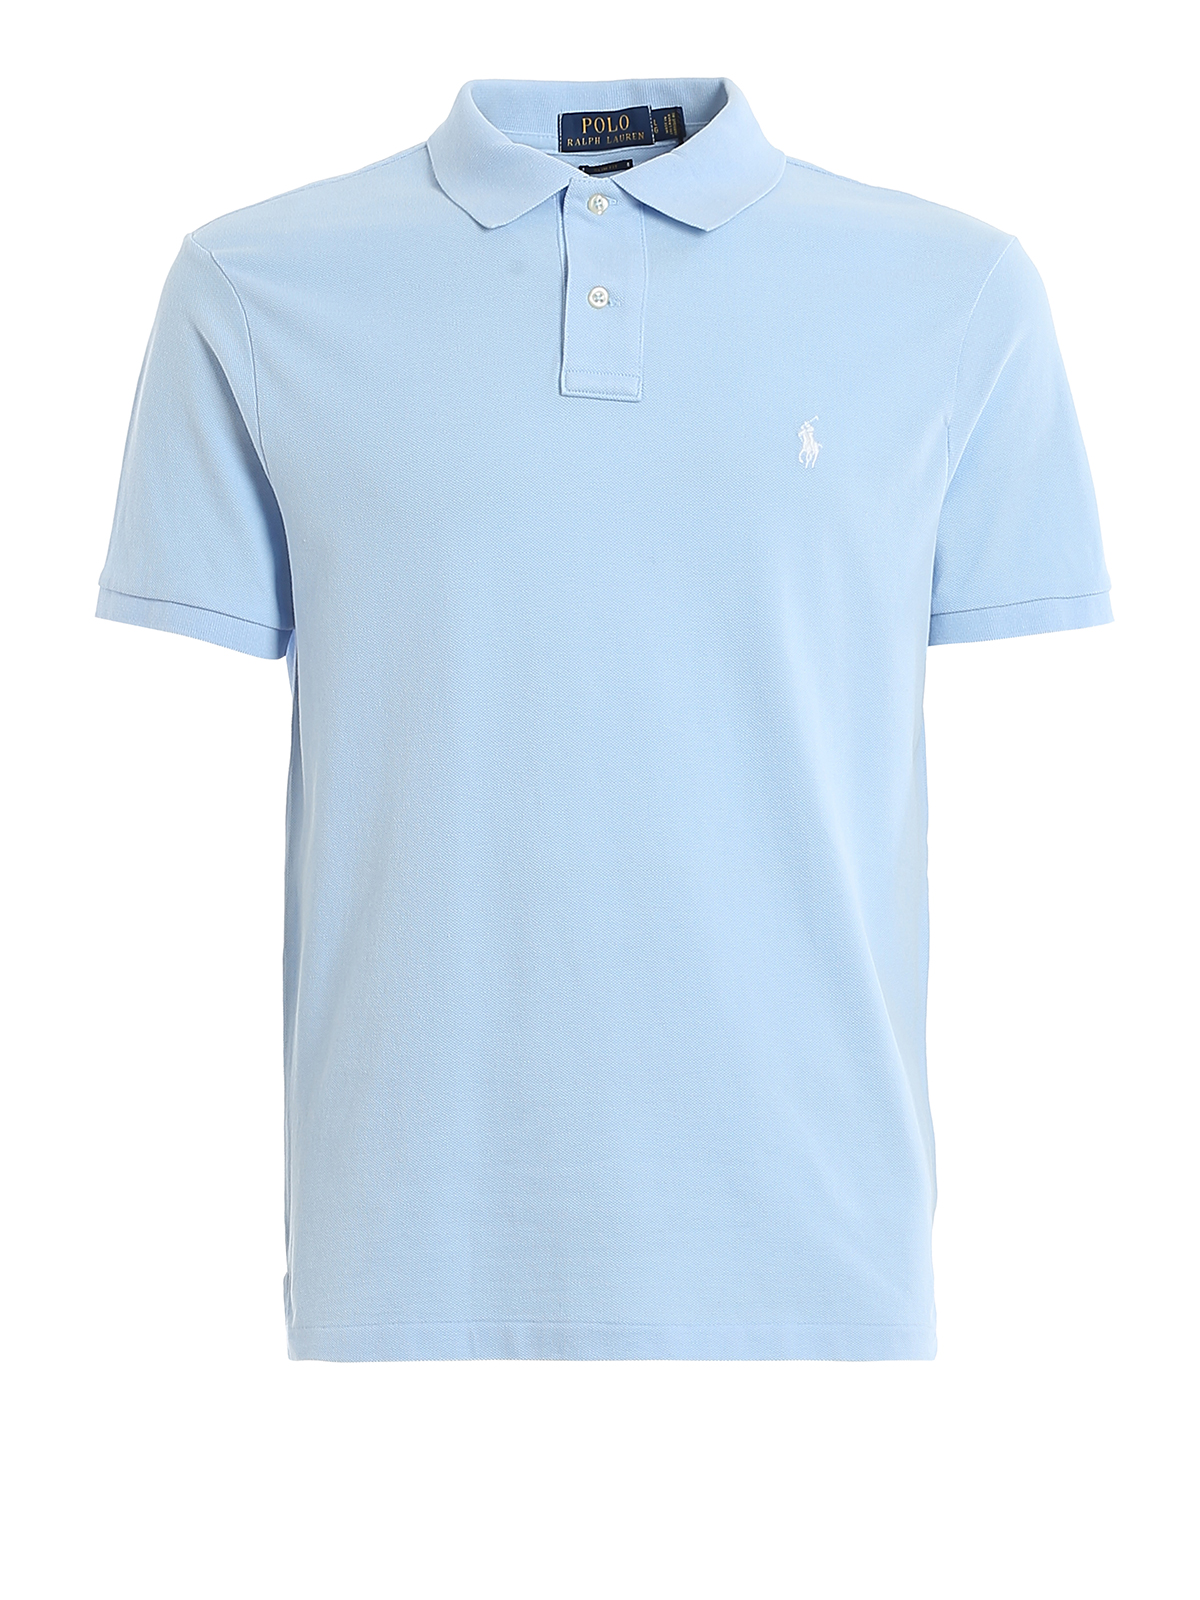 Polo shirts Polo Ralph Lauren - Light blue slim fit cotton pique polo -  710795080016